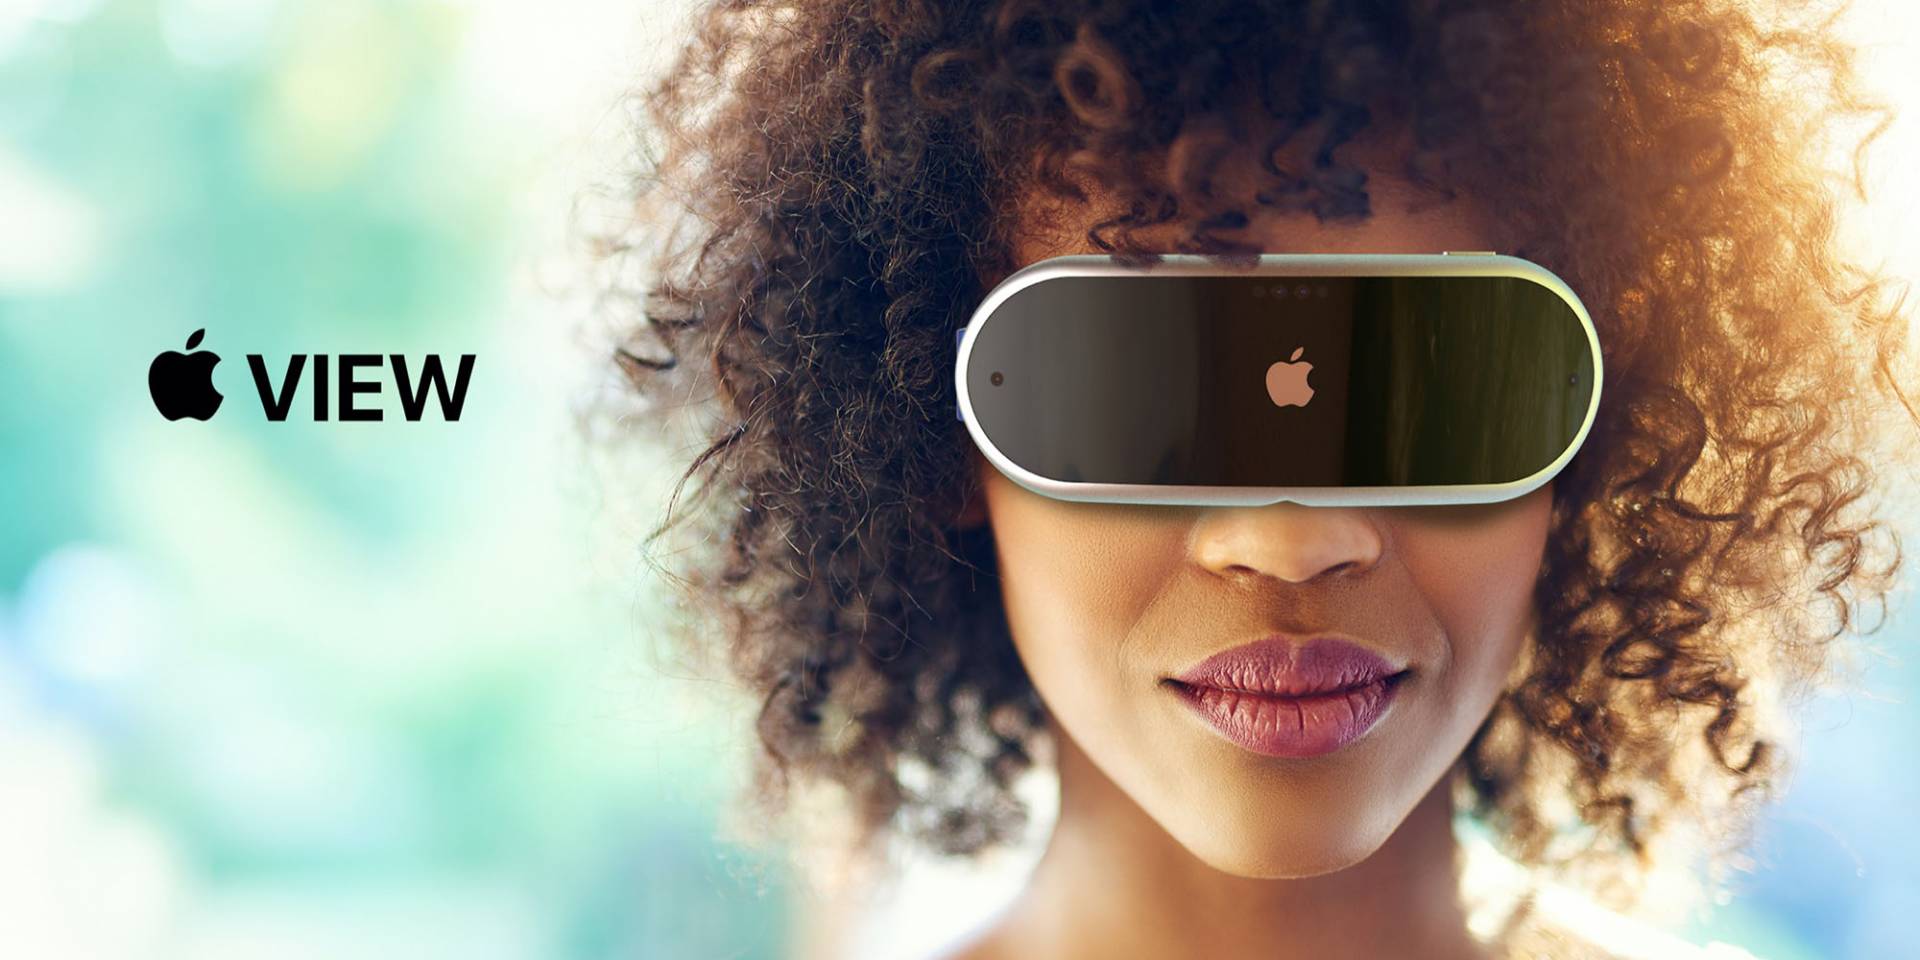 Takto má vyzerať prvý Apple VR/AR Headset od Apple